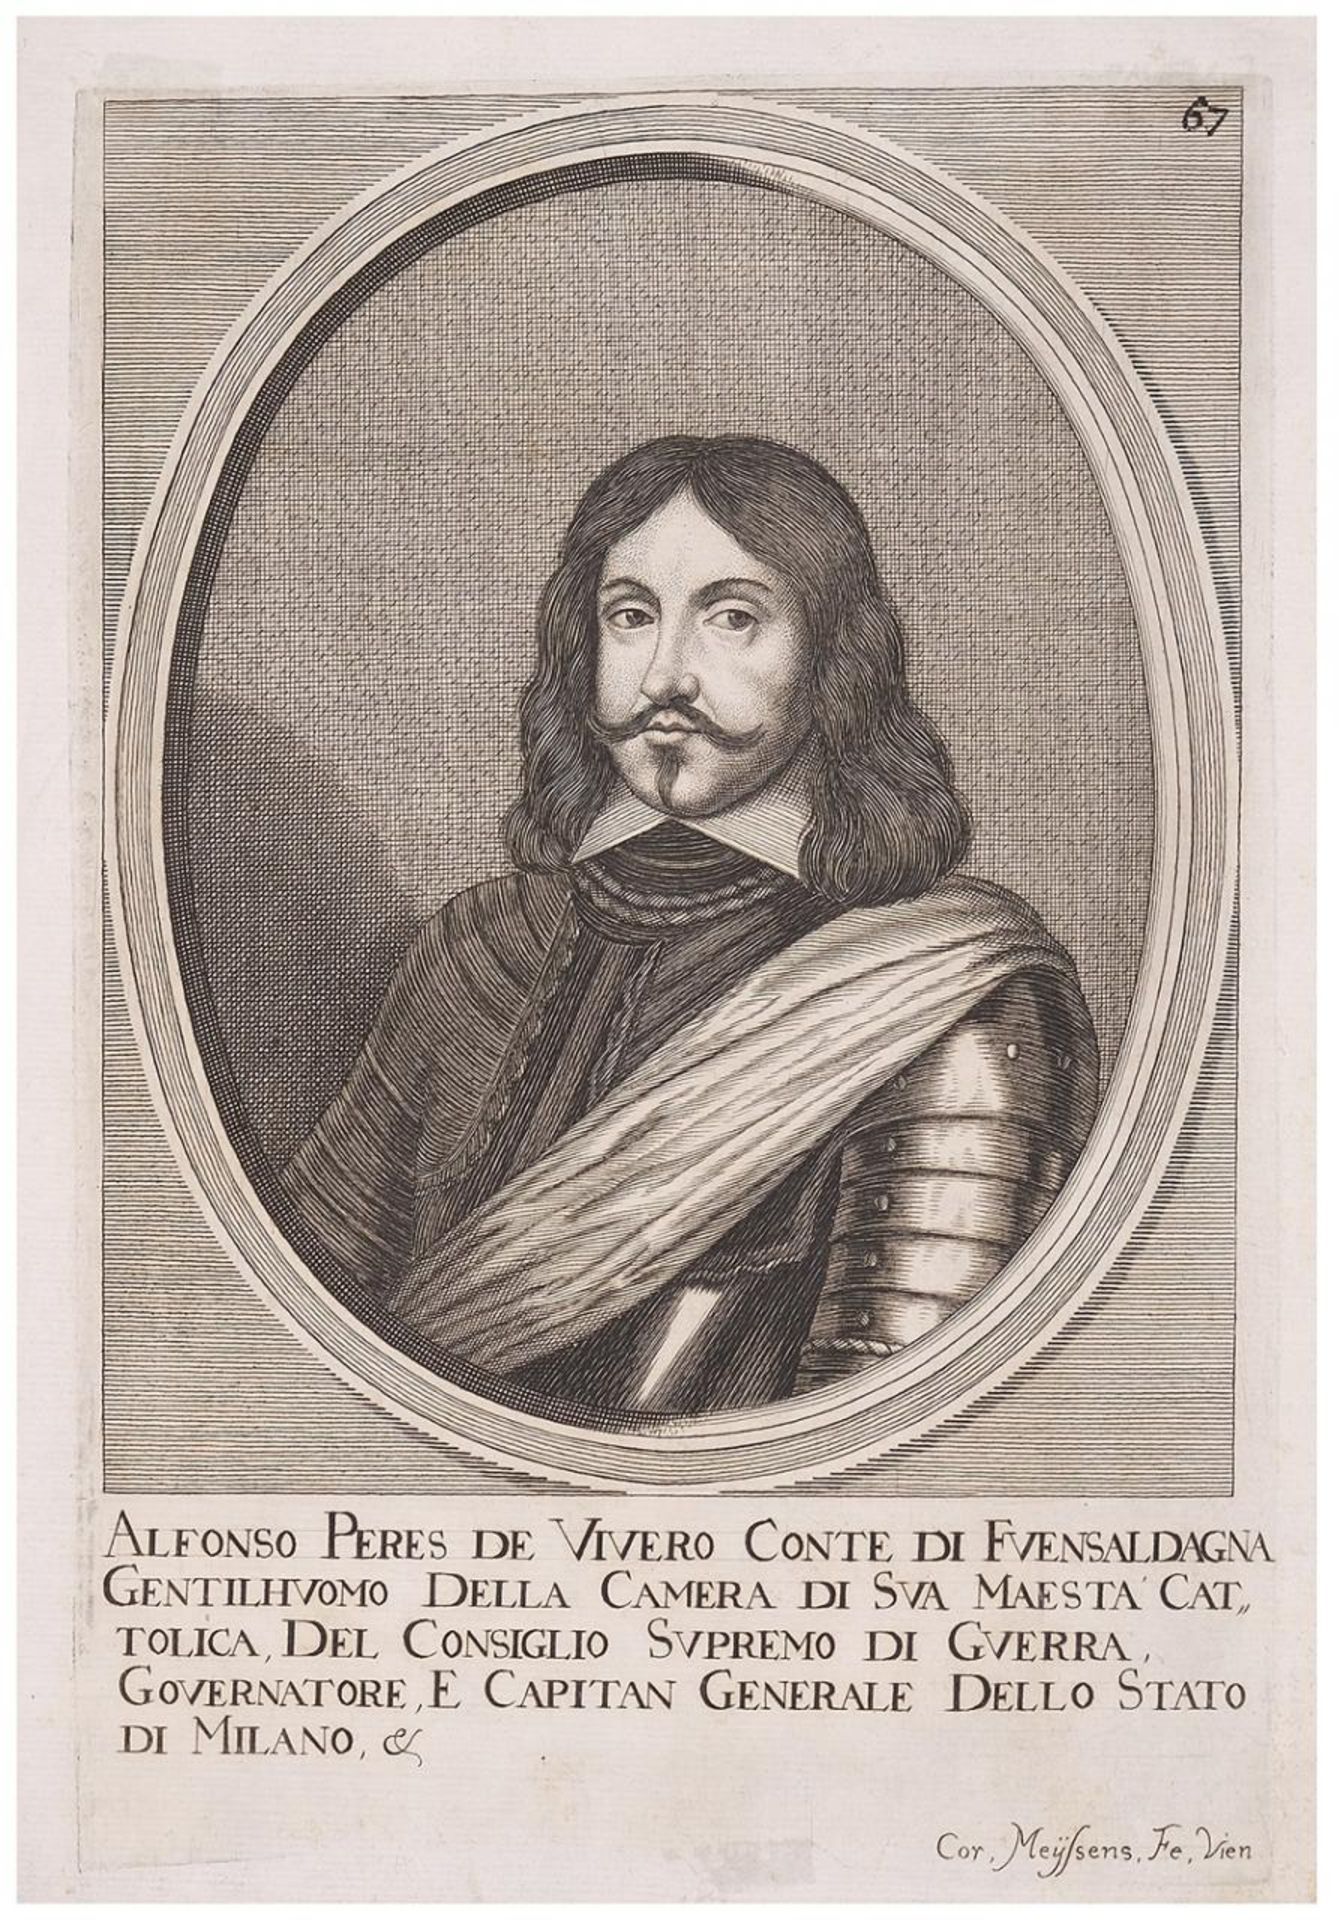 Retrato de D. Alfonso Peres de Vivero, Conde de Fuensaldaña